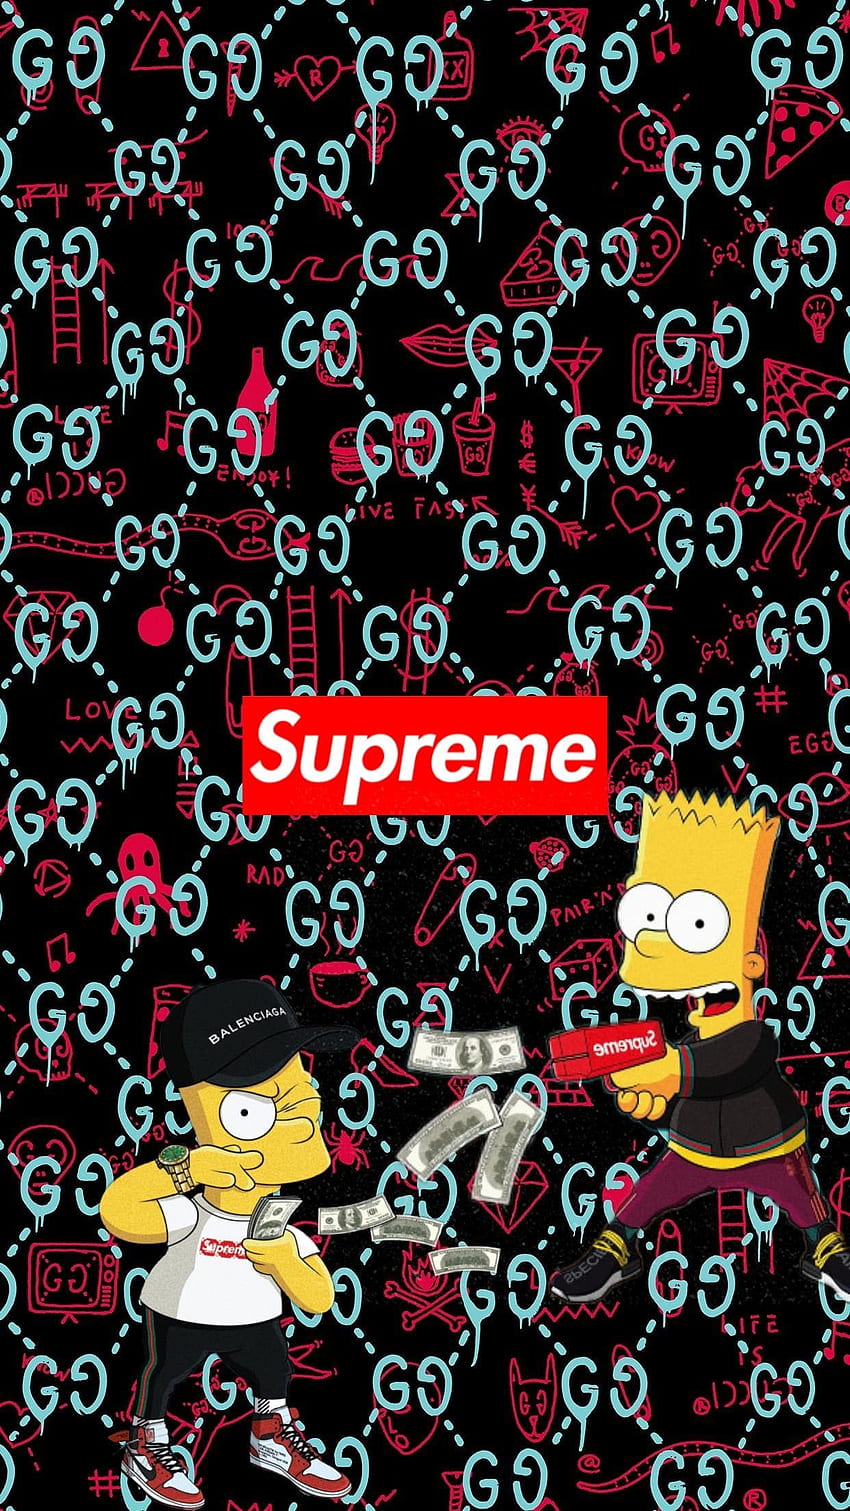 6ix9ine Wallpapers - Top 35 Best 6ix9ine Backgrounds Download